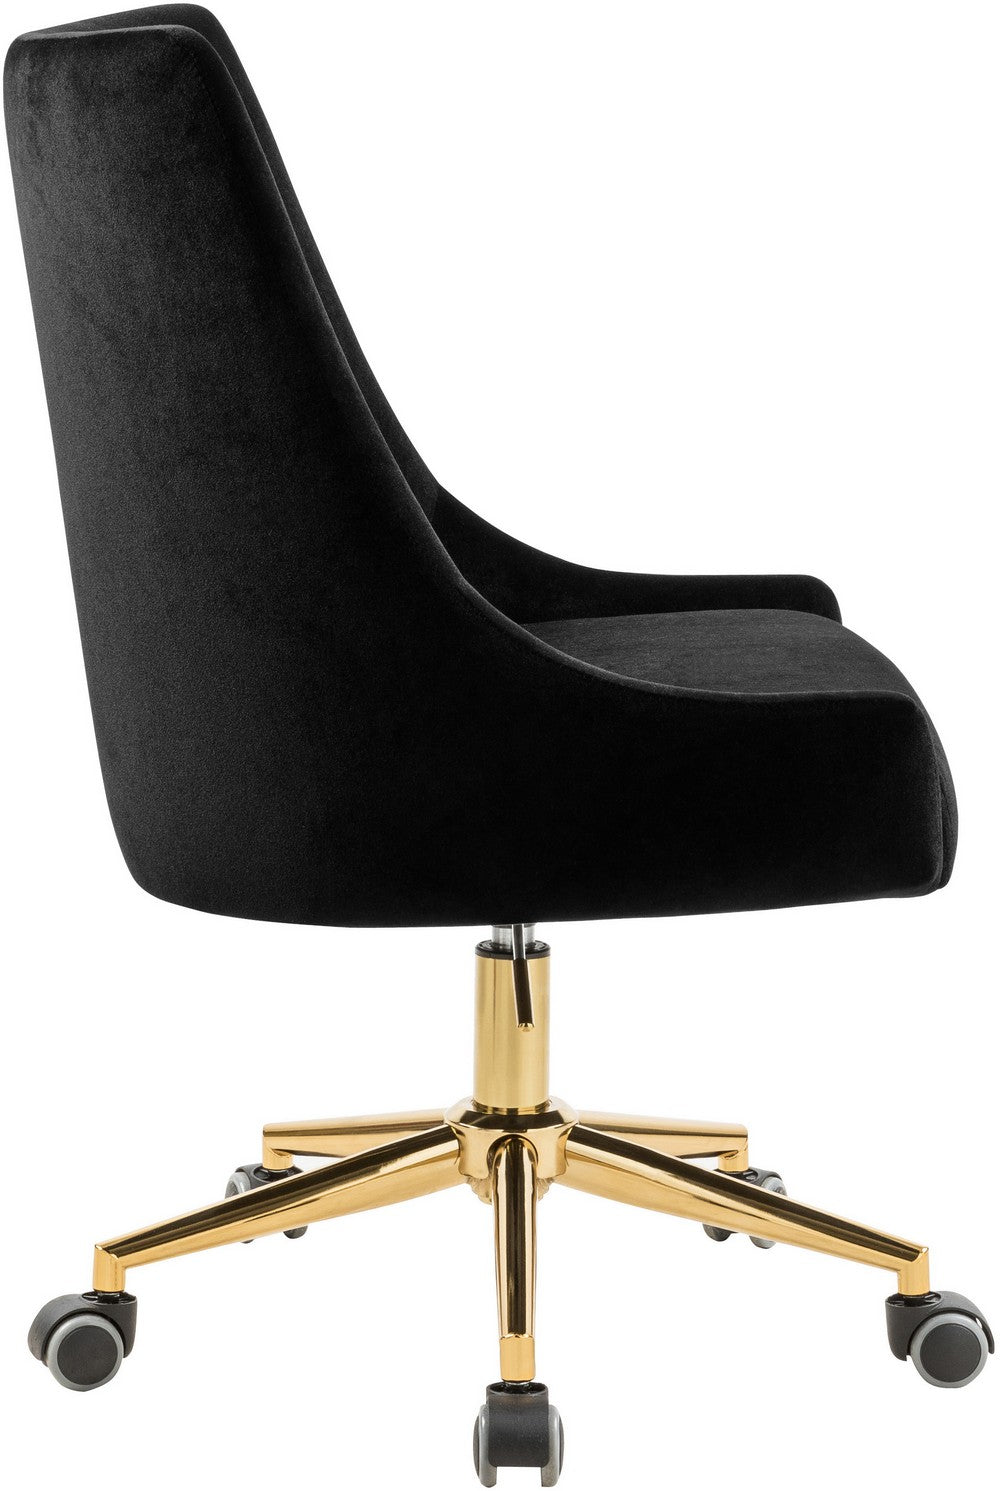 Meridian Furniture Karina Black Velvet Office Chair